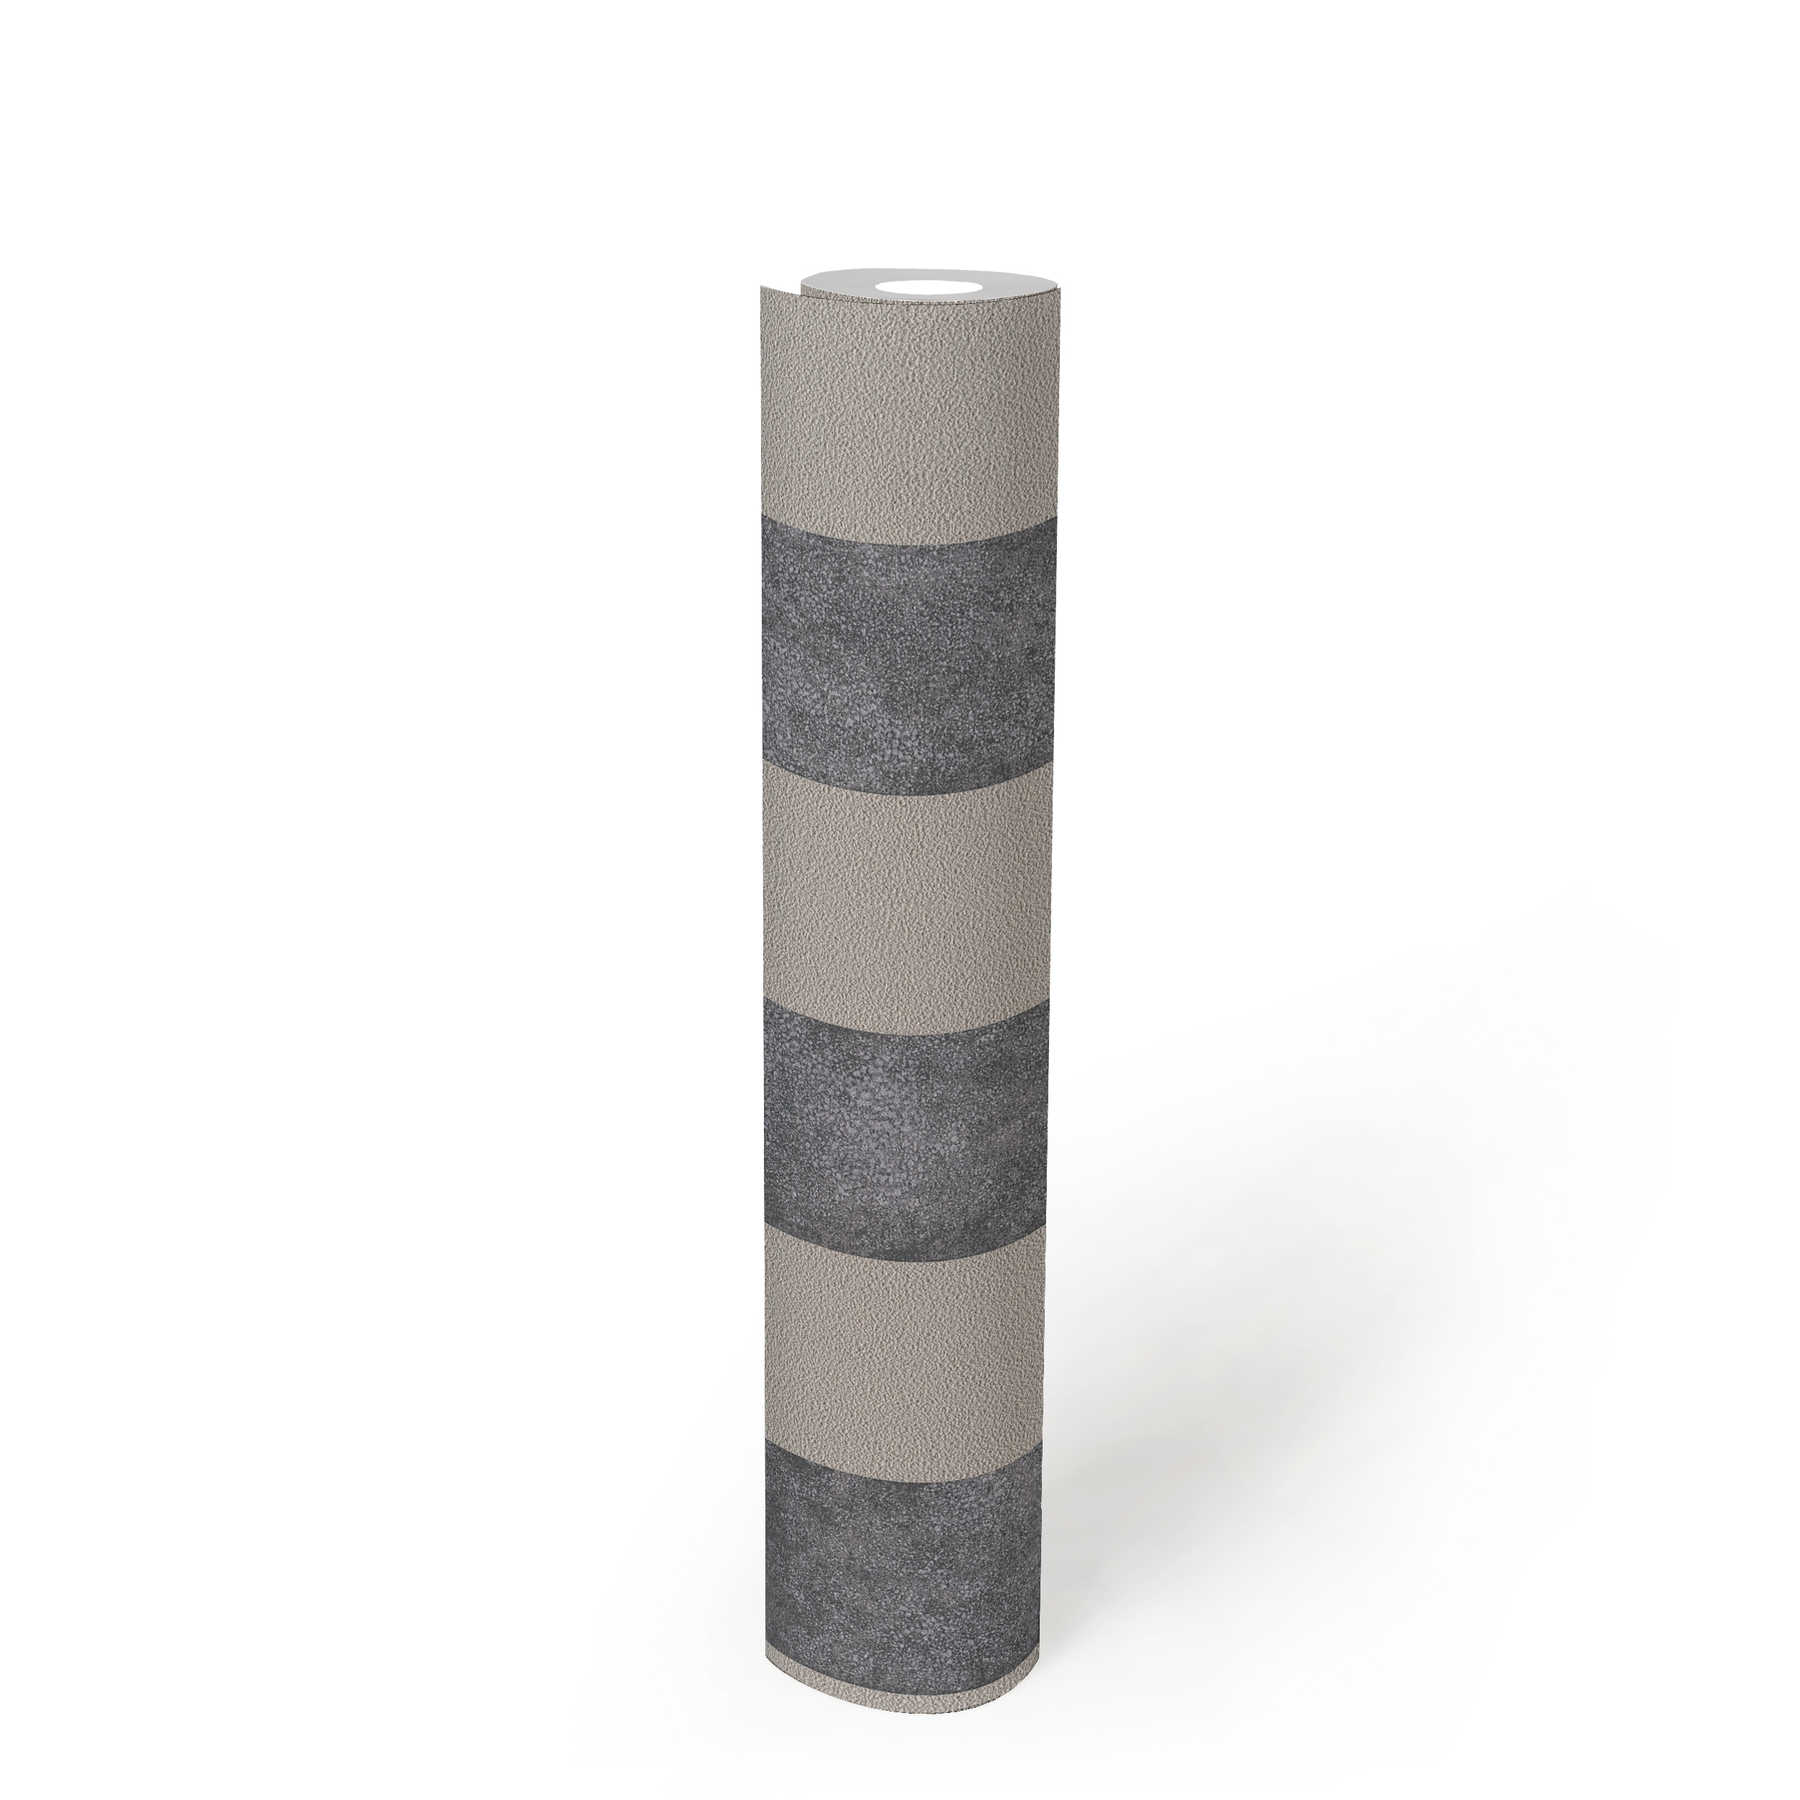             Blokstreepbehang met kleur- en structuurpatroon - zwart, grijs, beige
        